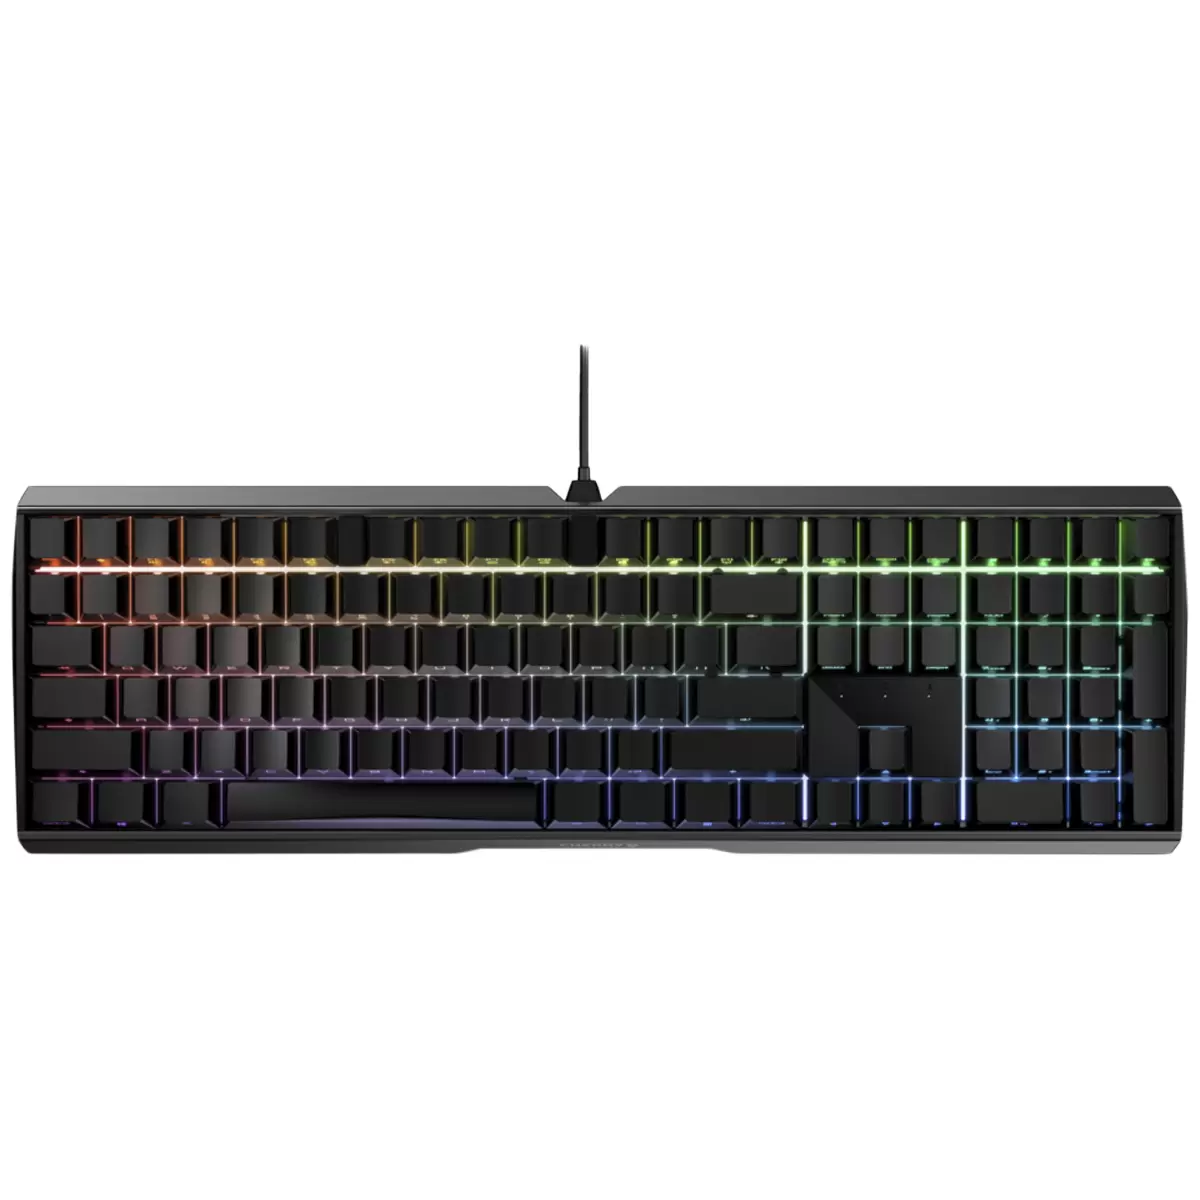 CHERRY MX 3.0S RGB Gaming Keyboard (Black)  G80-3874LYAEU-2